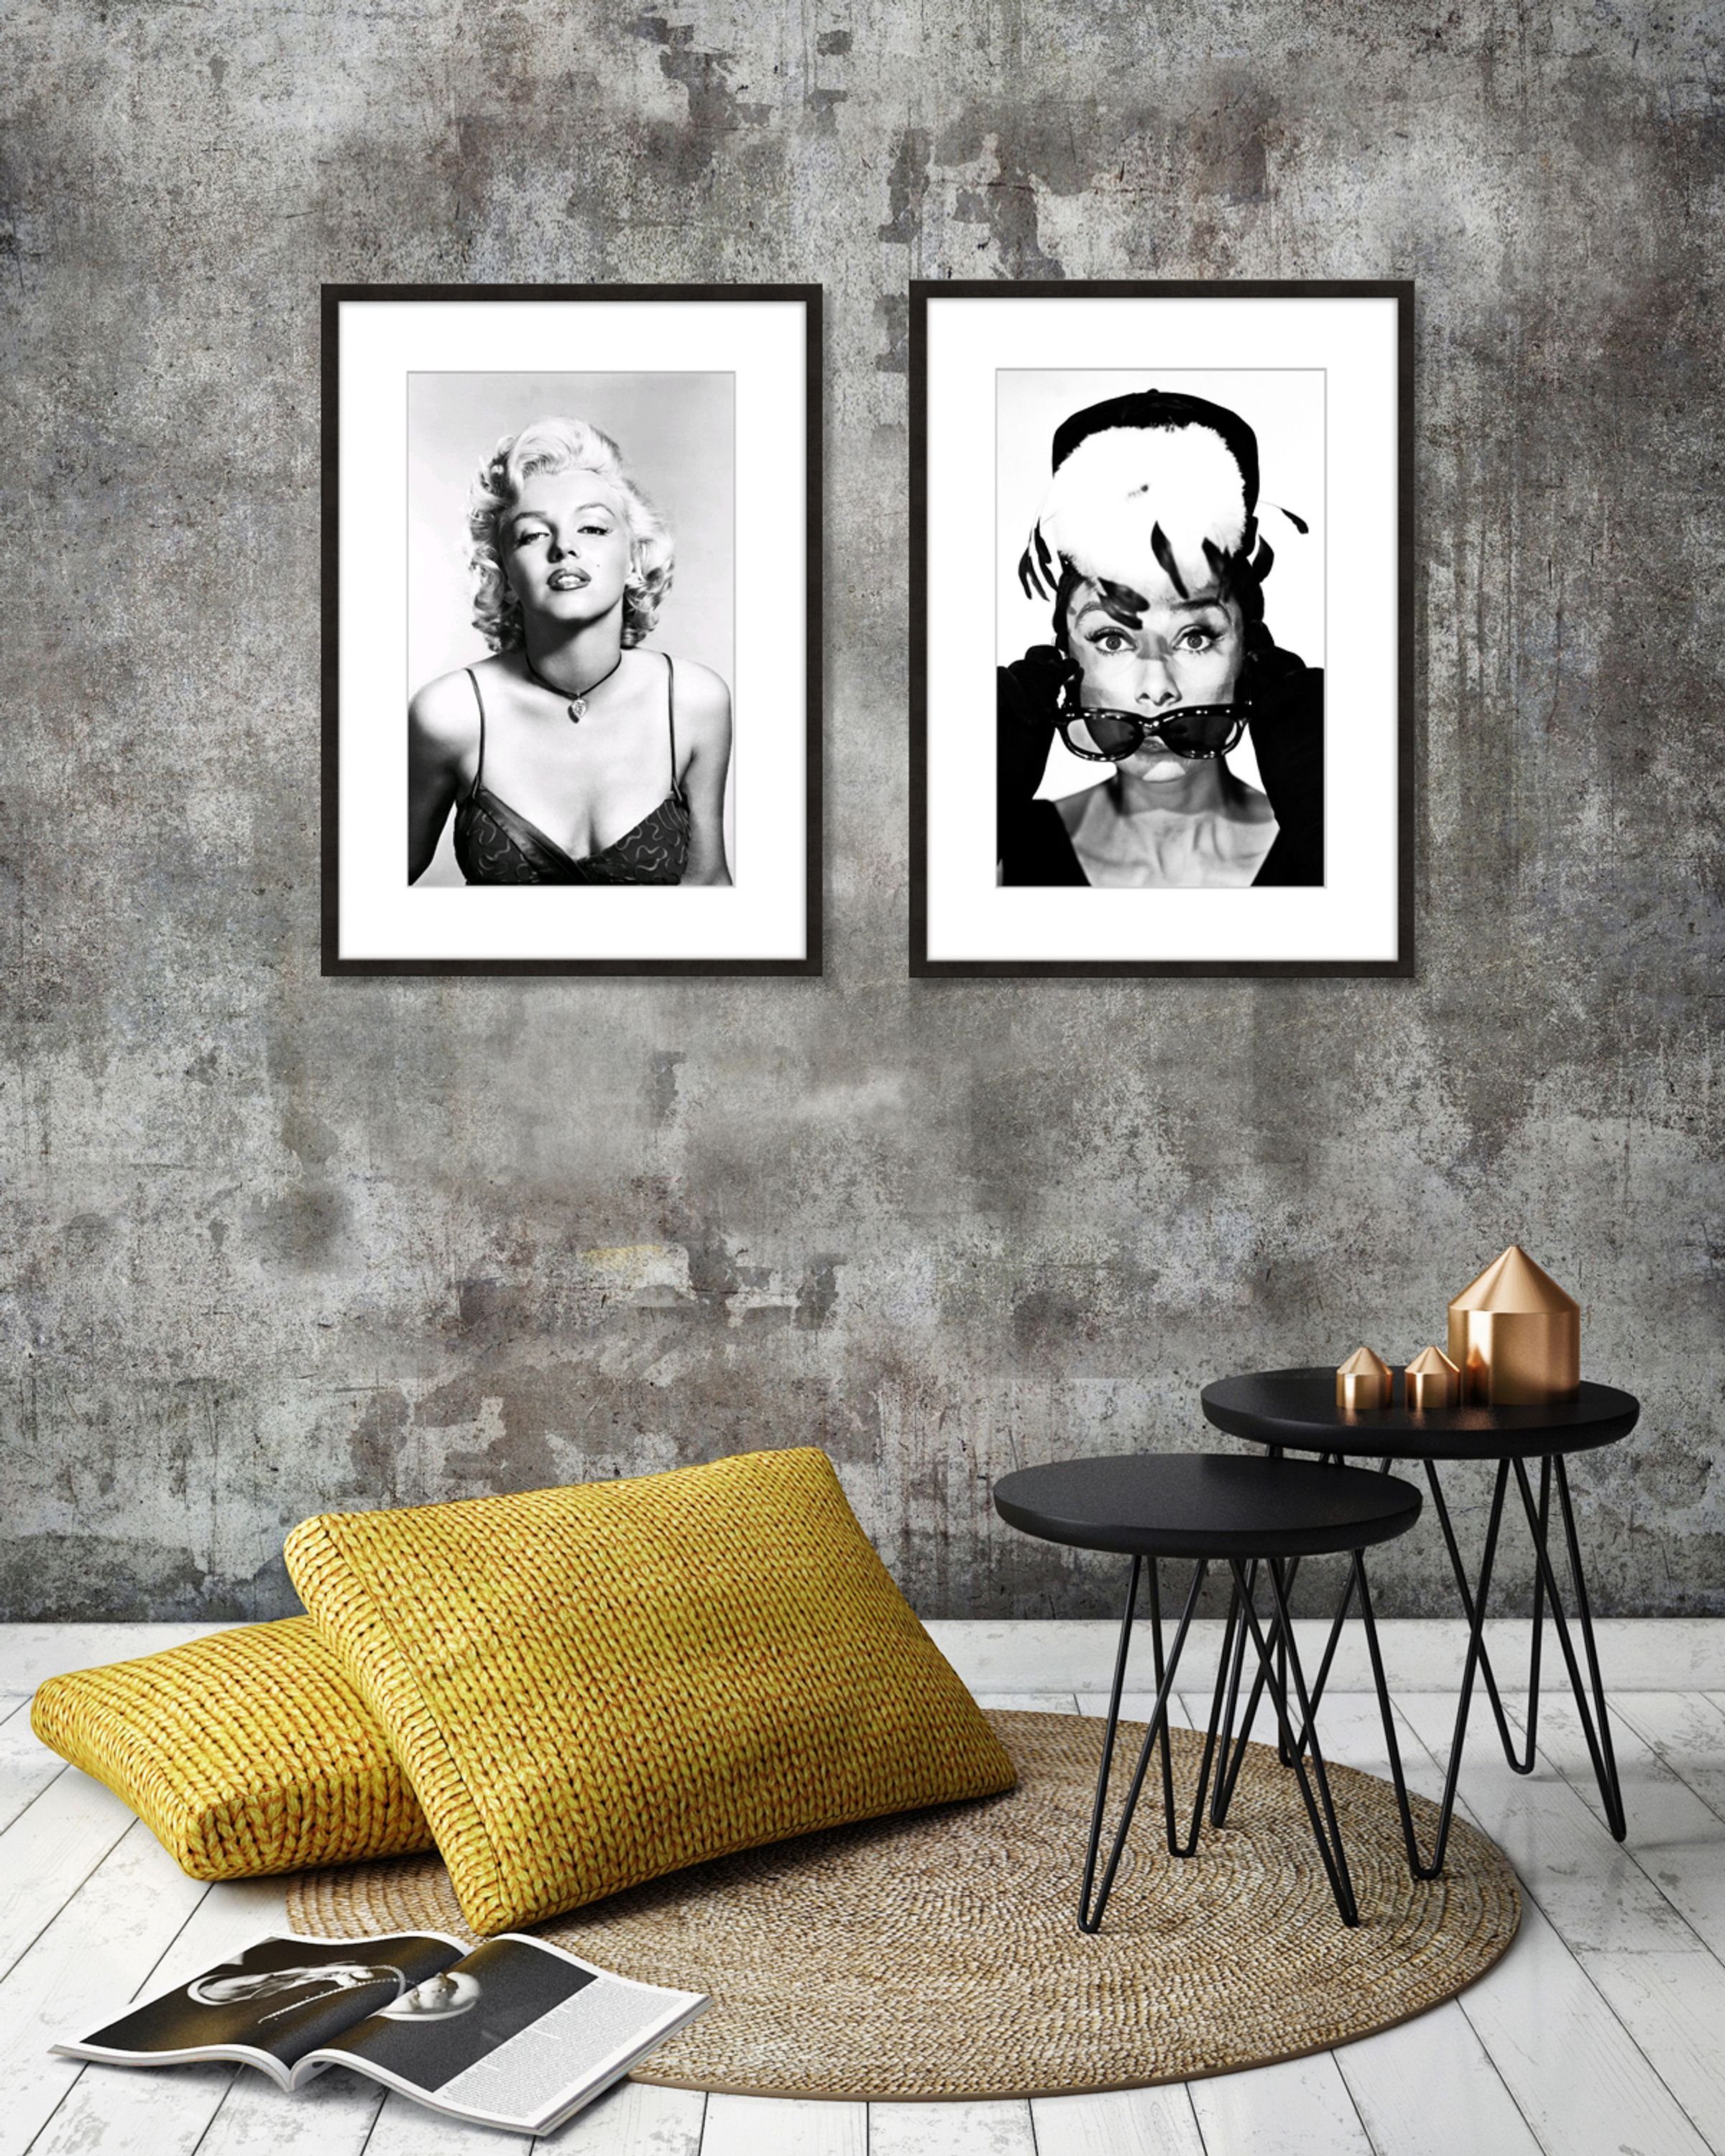 Monroe Rahmen Marilyn mit Bild schwarz-weiß Marilyn / Bild artissimo / Film-Star: Rahmen gerahmt Poster mit Monroe, 51x71cm